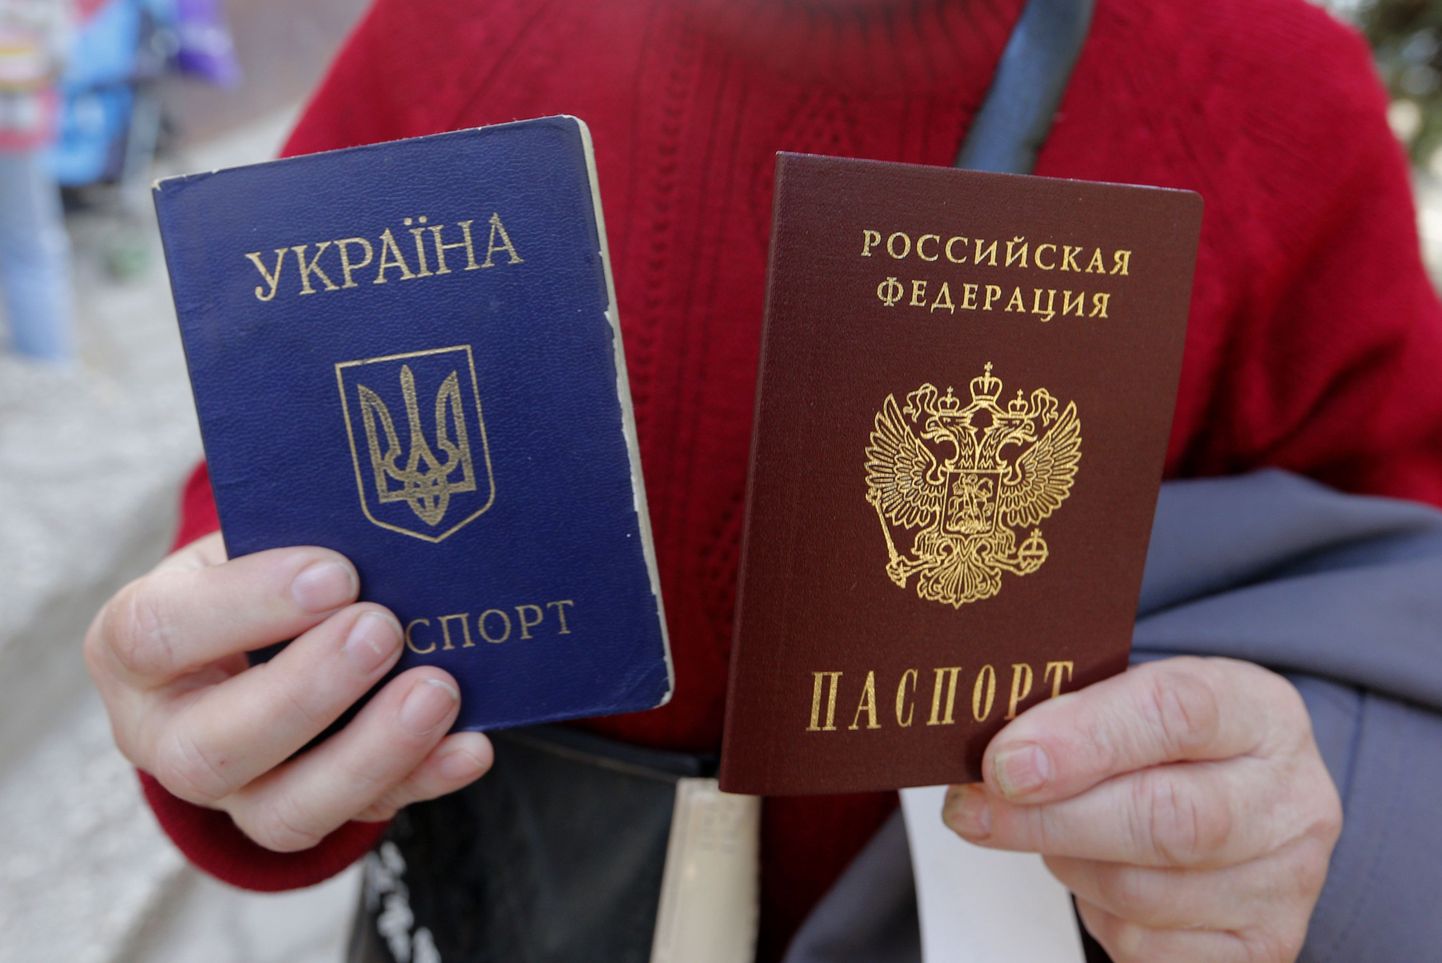 Venemaa passi saanu Simferopolis